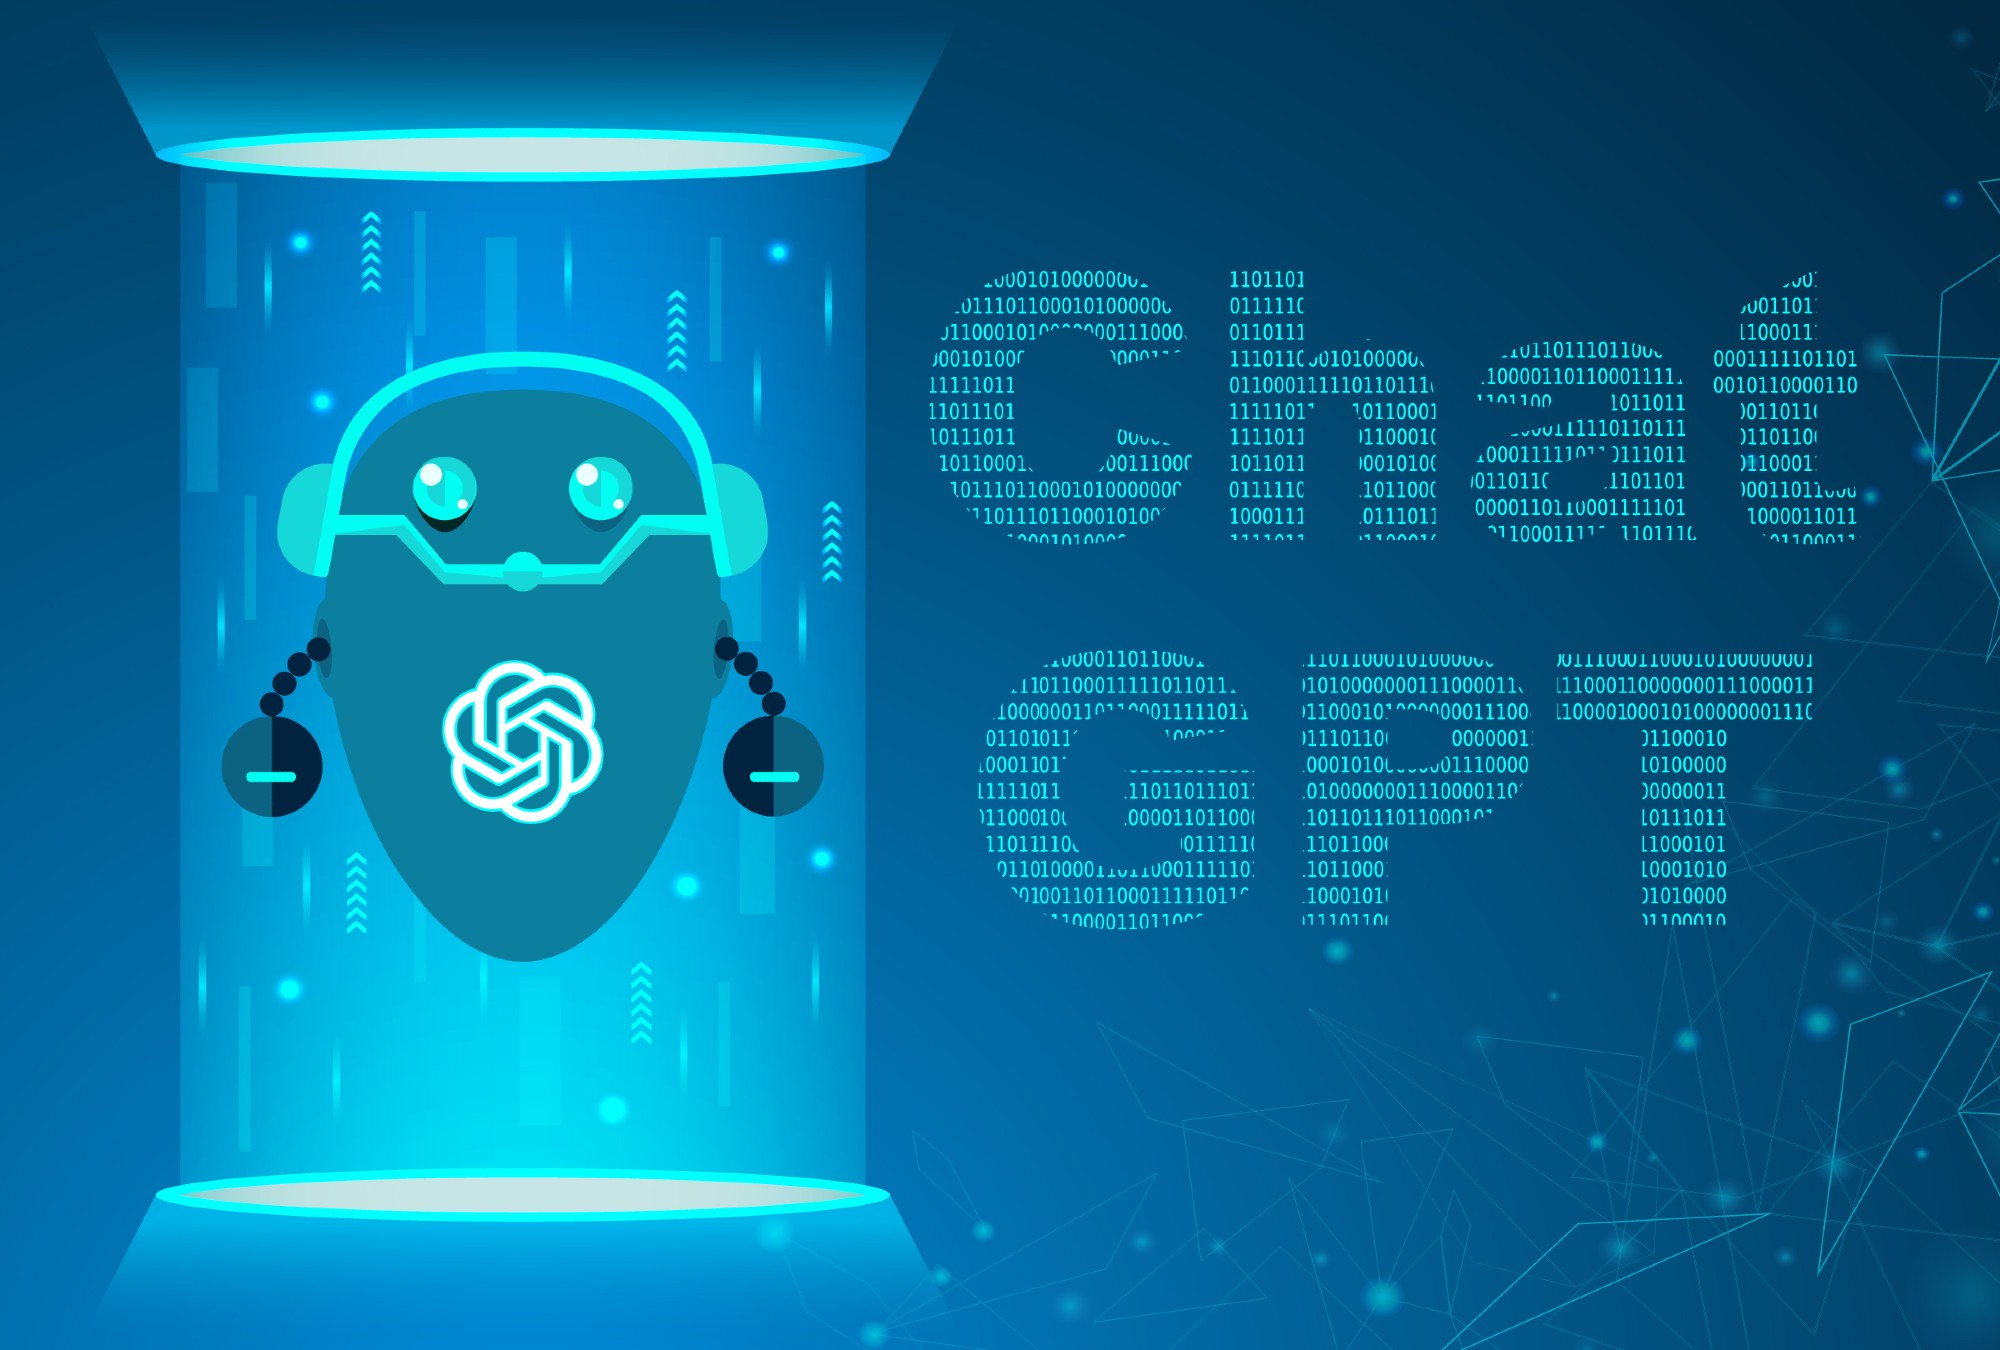 ¿Ya has usado ChatGPT?